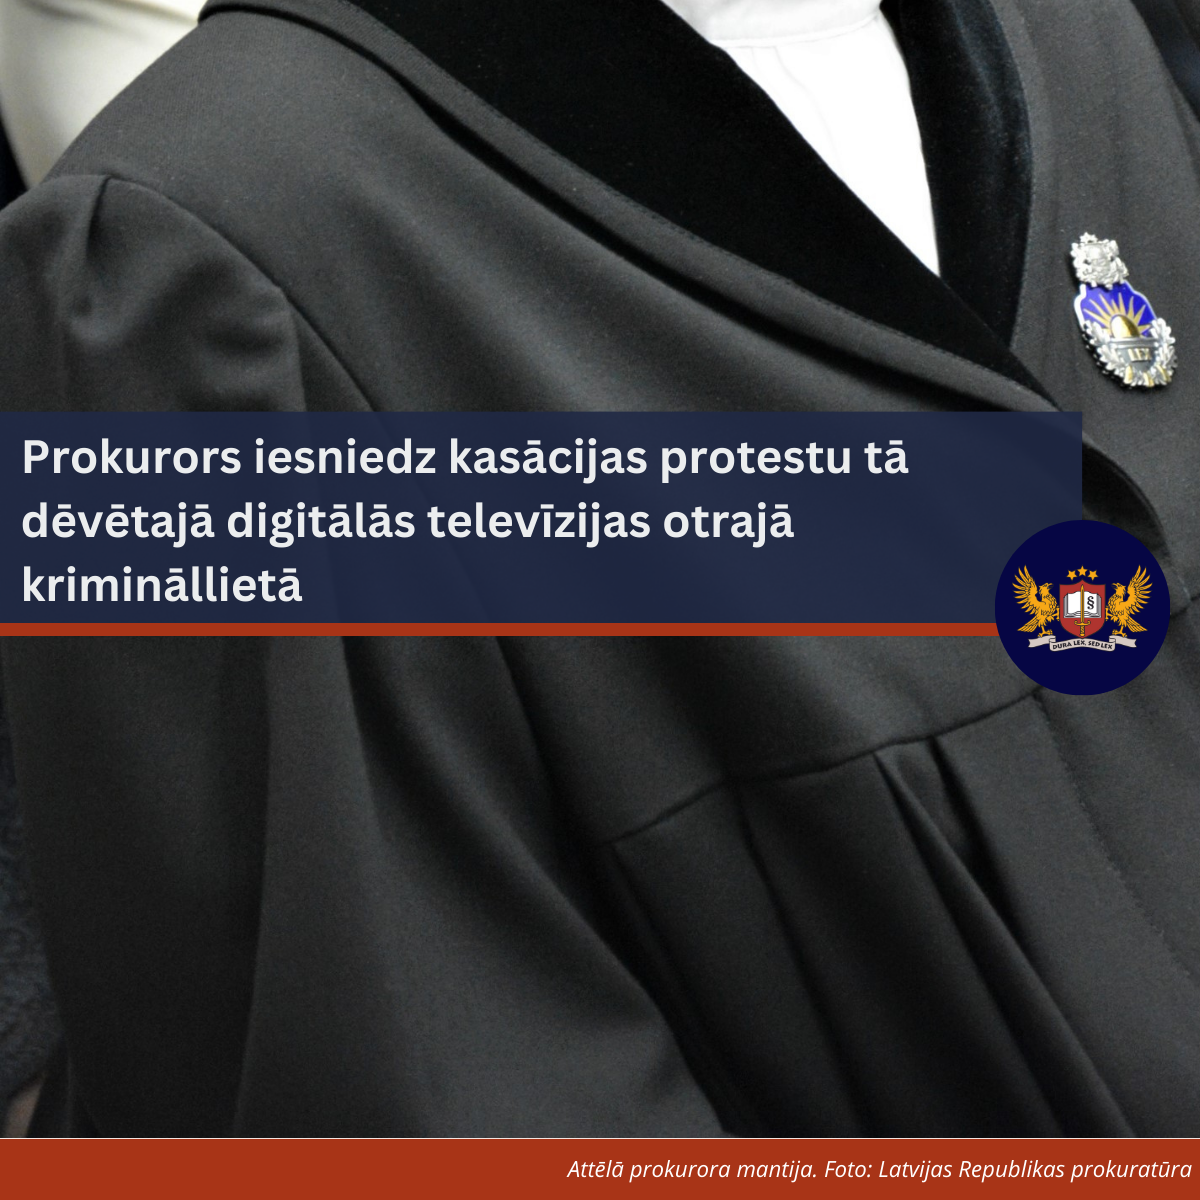 Attēls: Prokurors iesniedz kasācijas protestu tā dēvētajā digitālās televīzijas otrajā krimināllietā